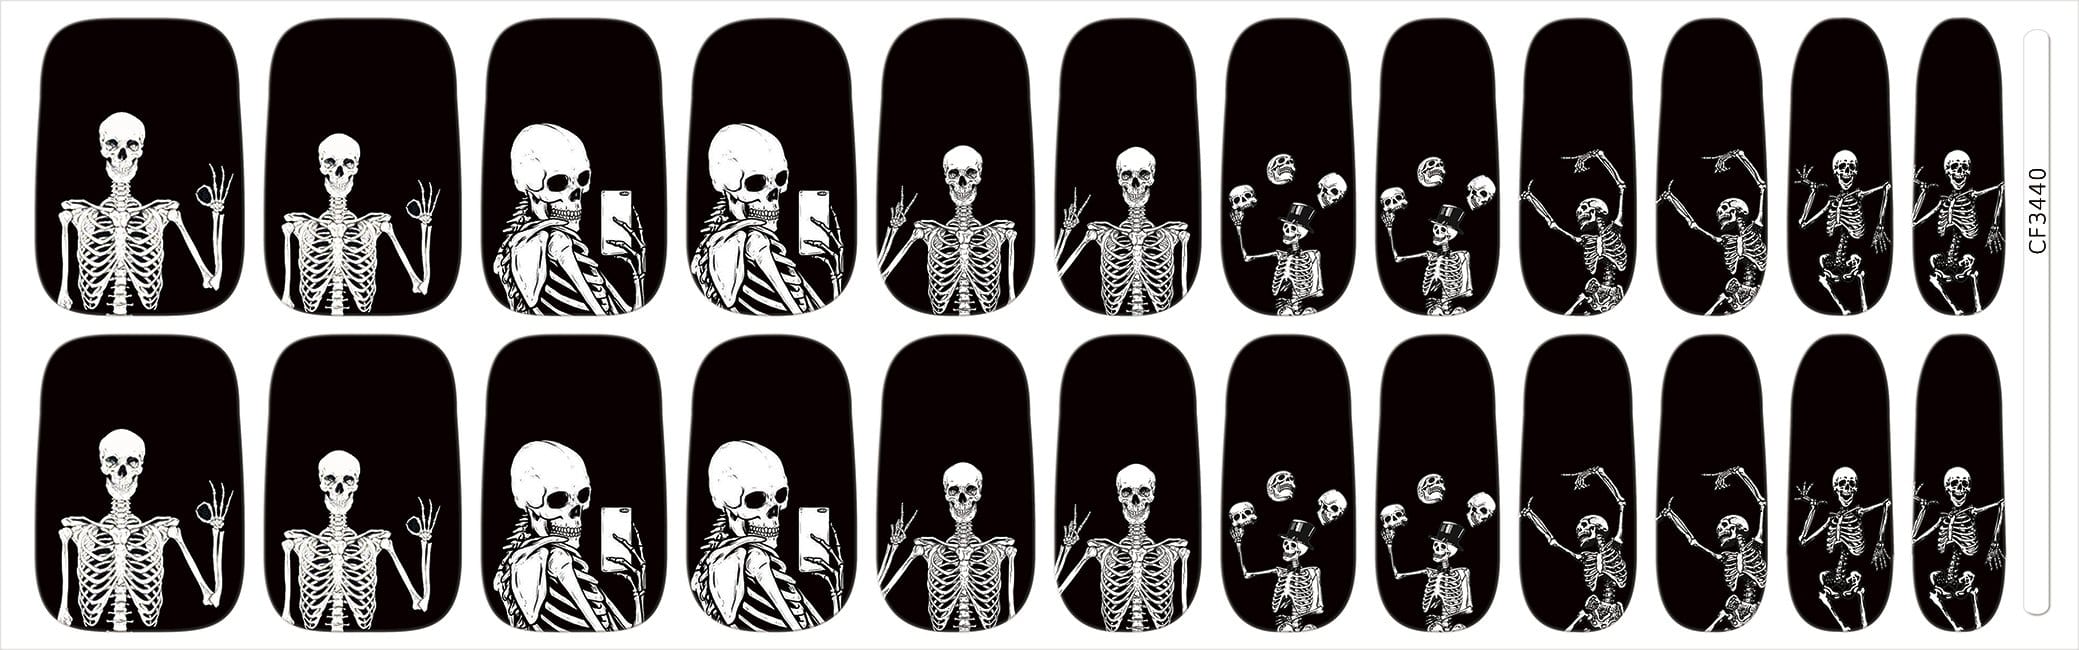 NEW: Skeleton Selfie